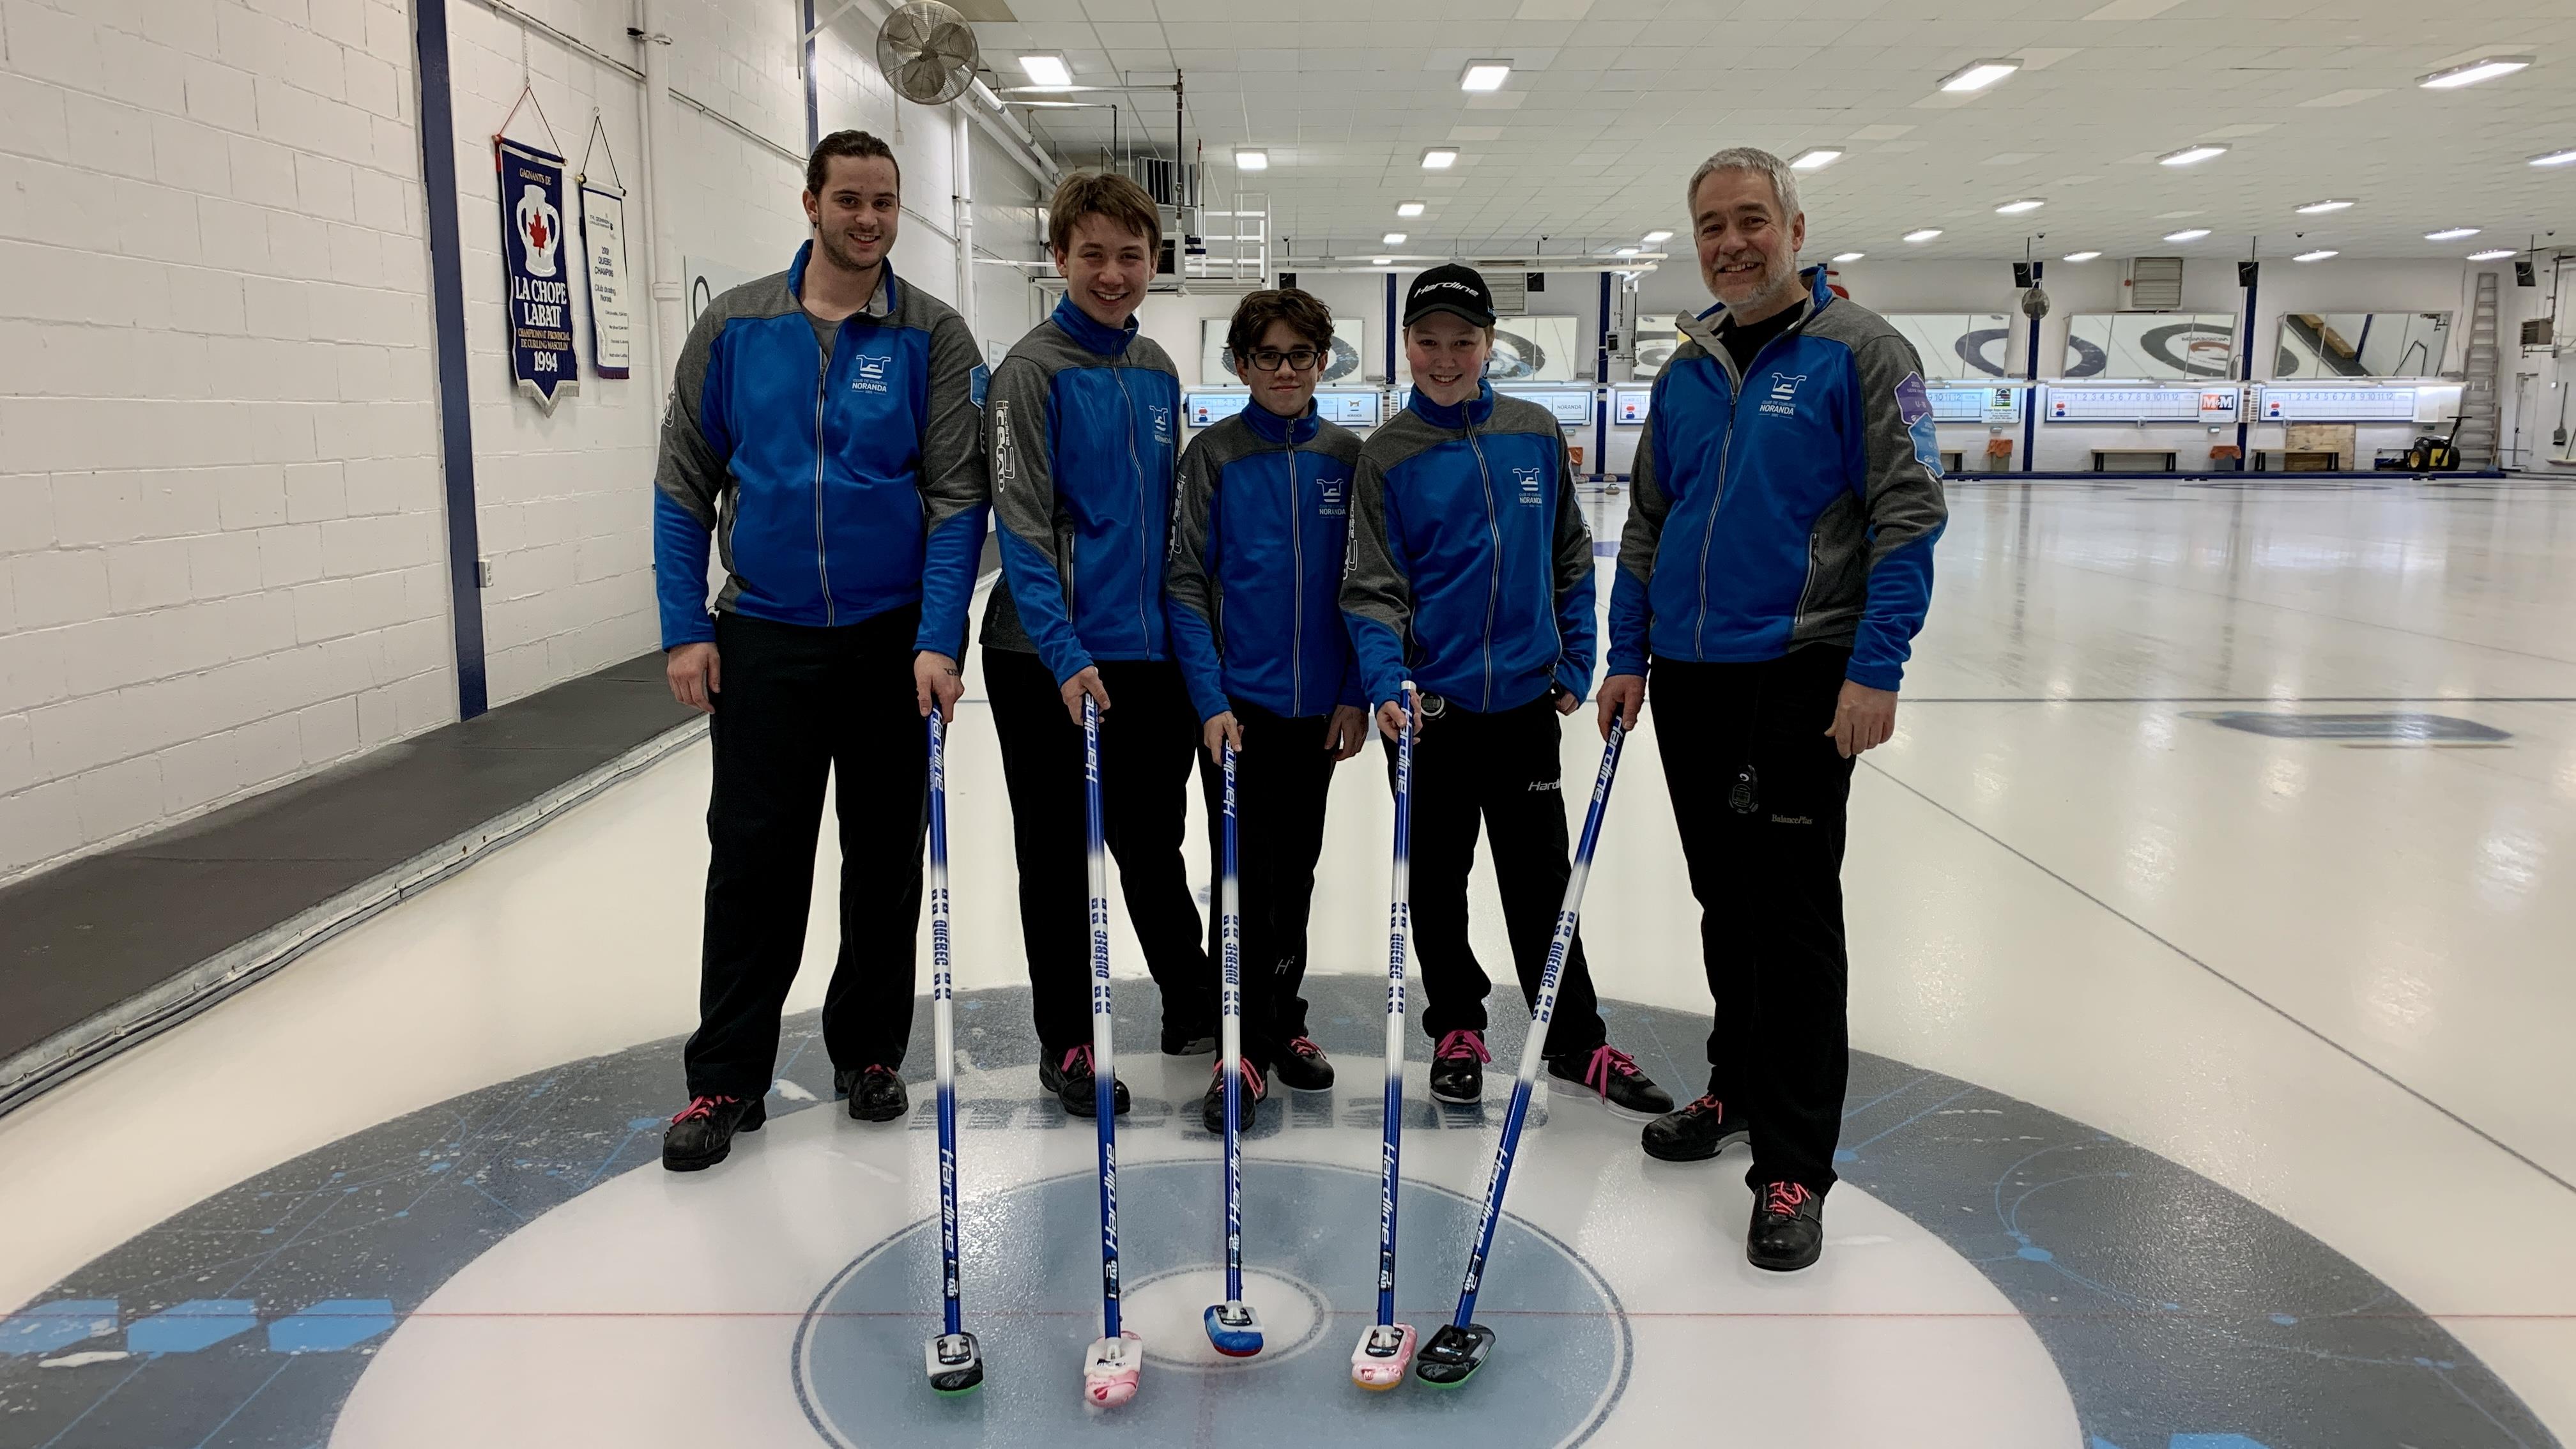 L’équipe Bédard en mission au championnat canadien U21 de curling
L’équipe Bédard en mission au championnat canadien U21 de curling